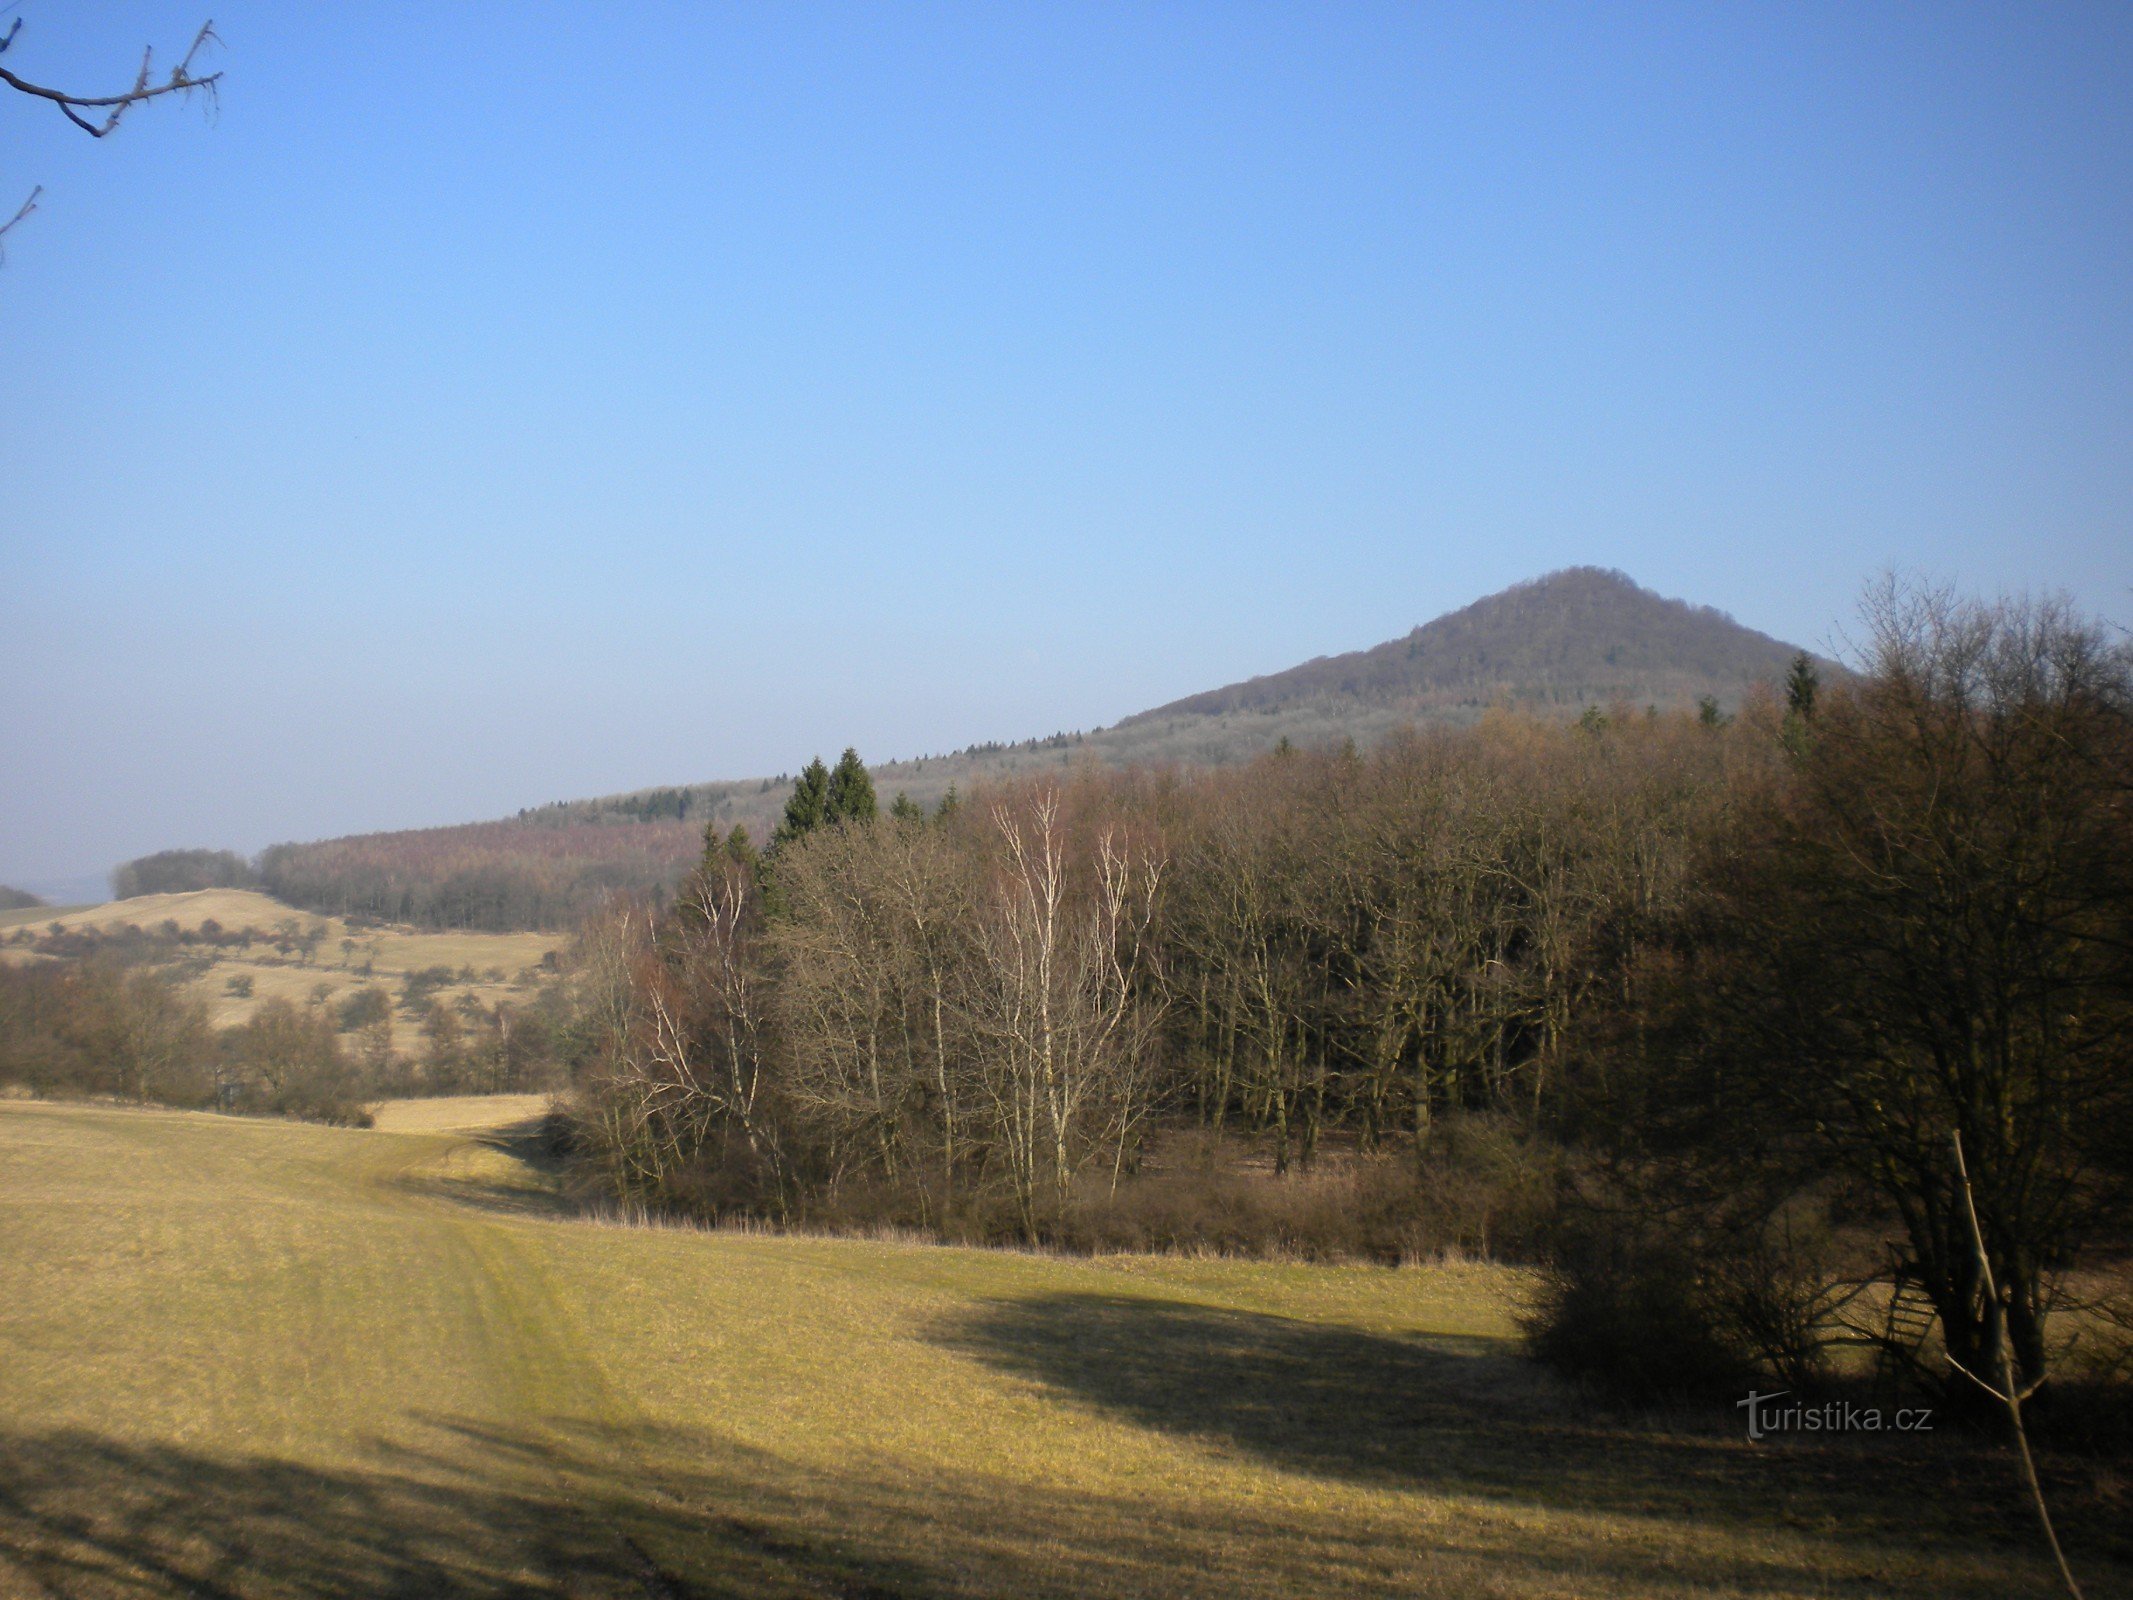 Hora Klecečná từ đường đến Bílka.